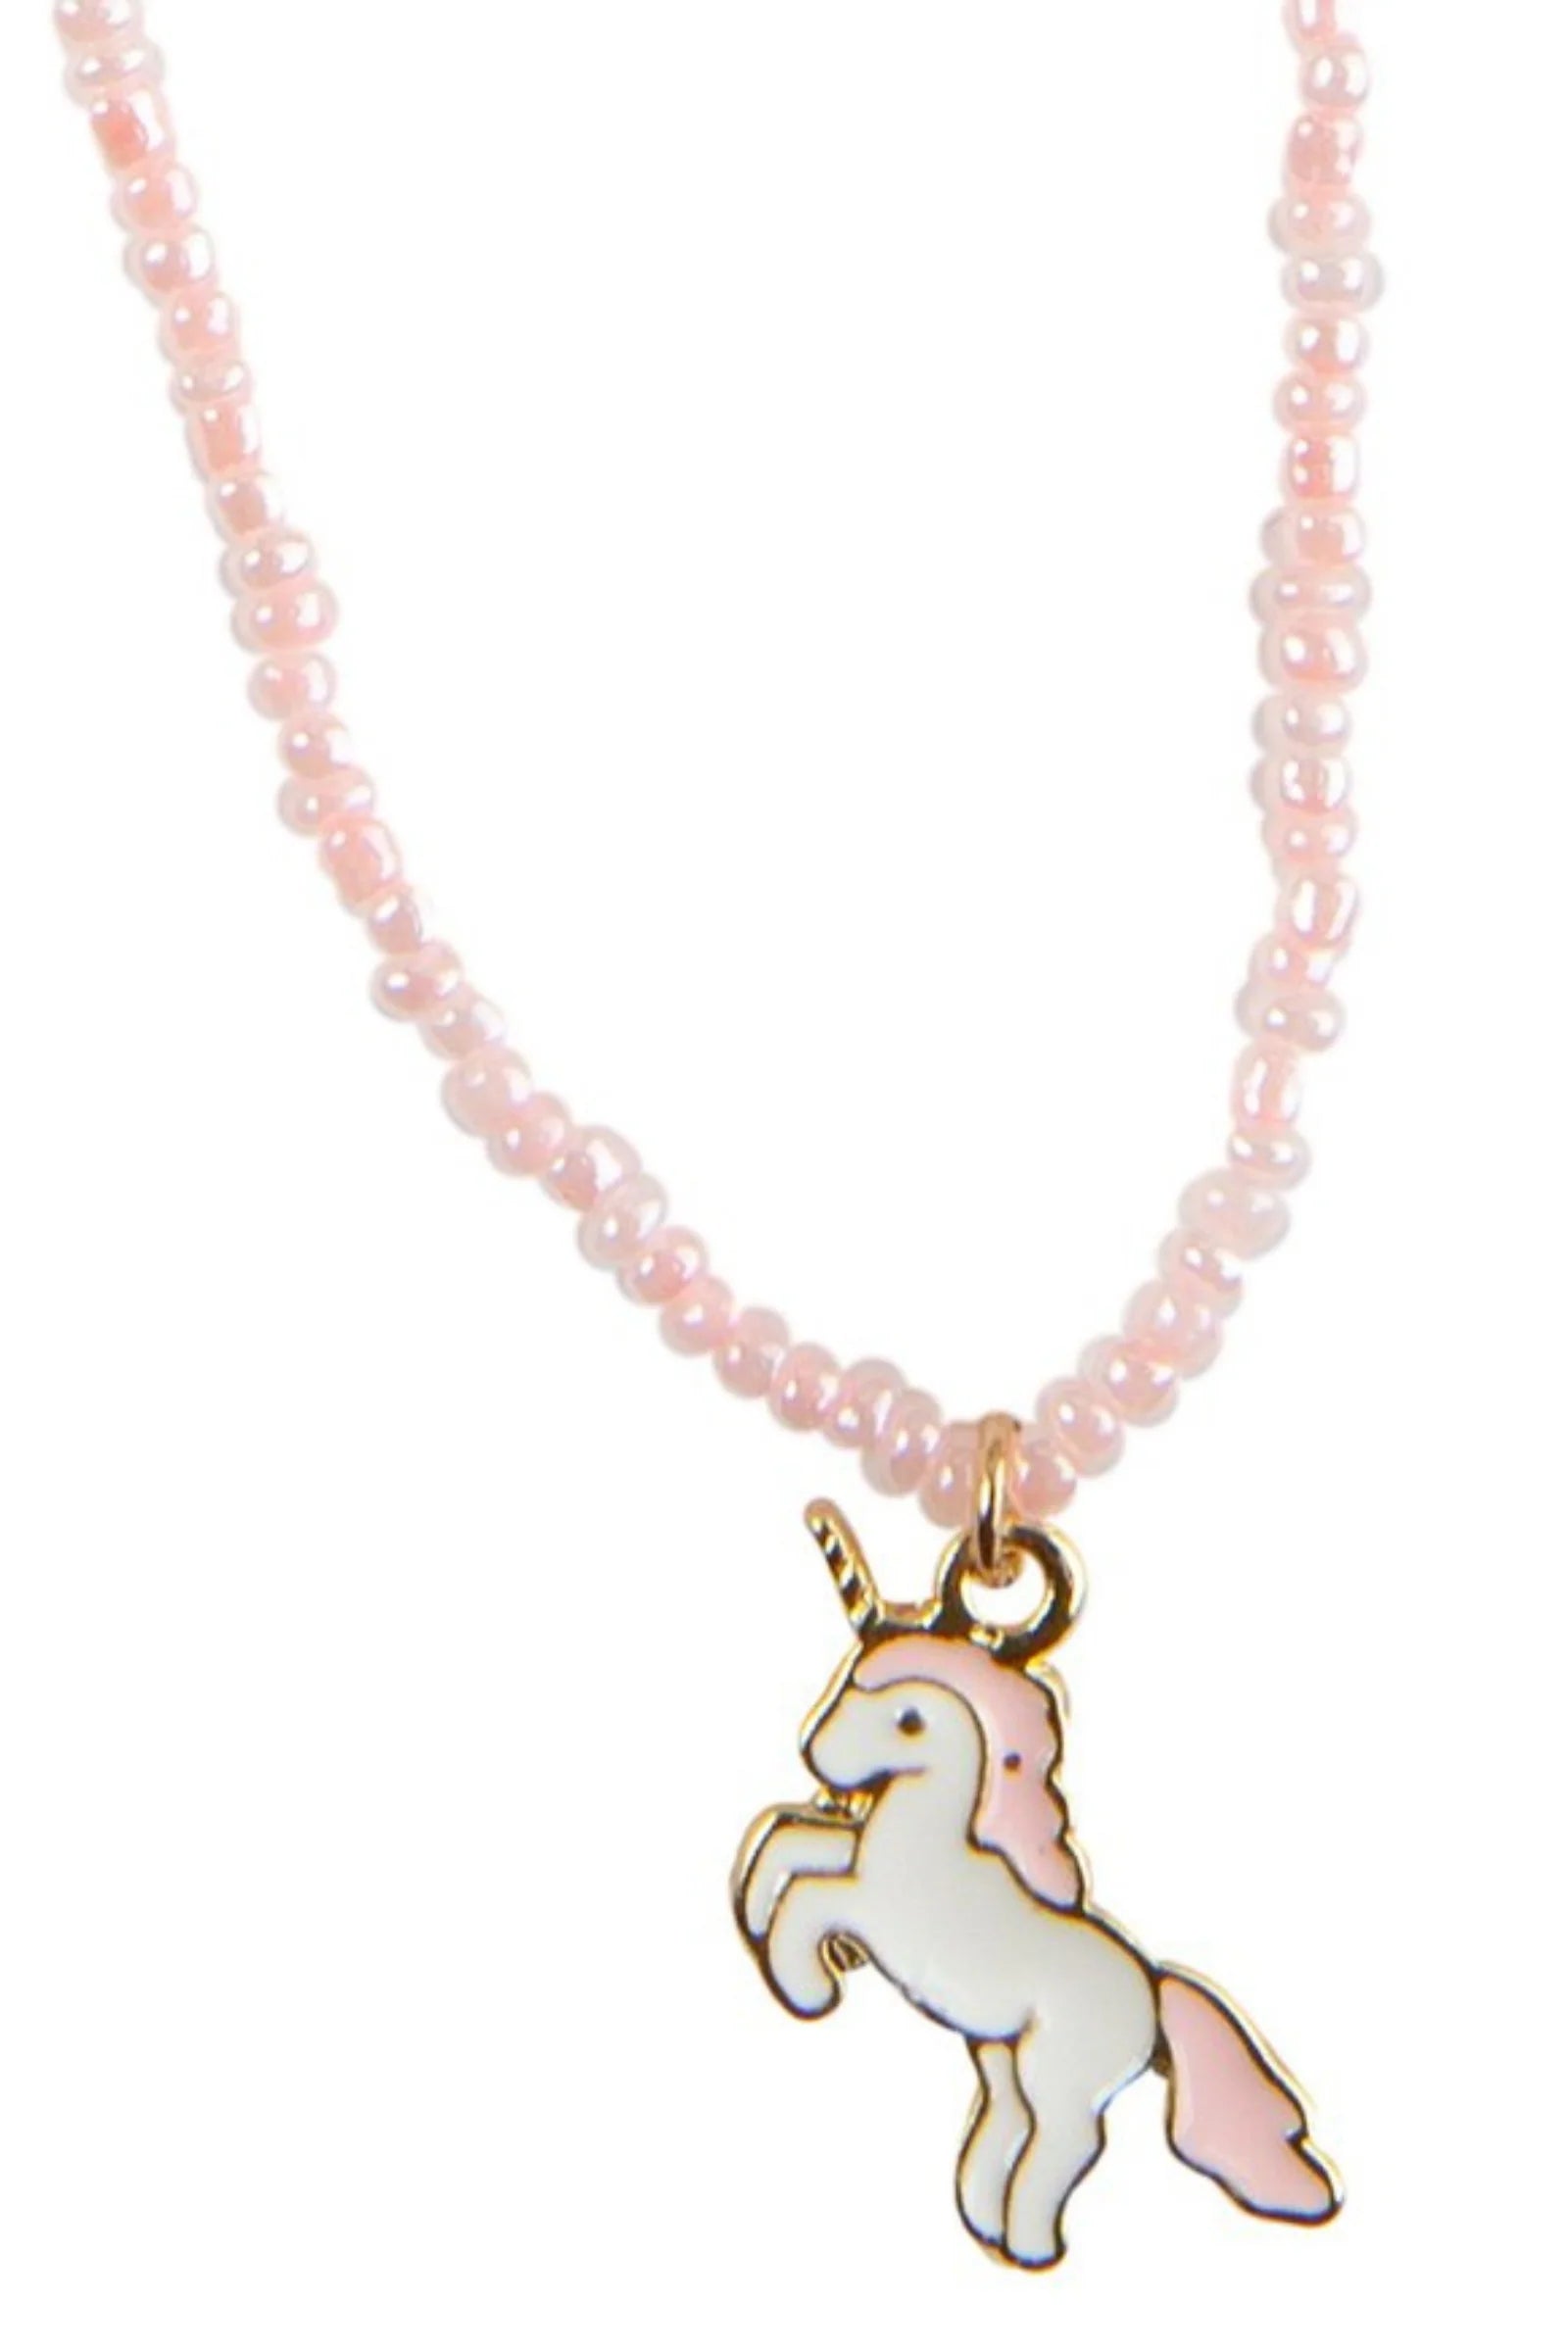 Boutique Unicorn Adorn Necklace  - Doodlebug's Children's Boutique